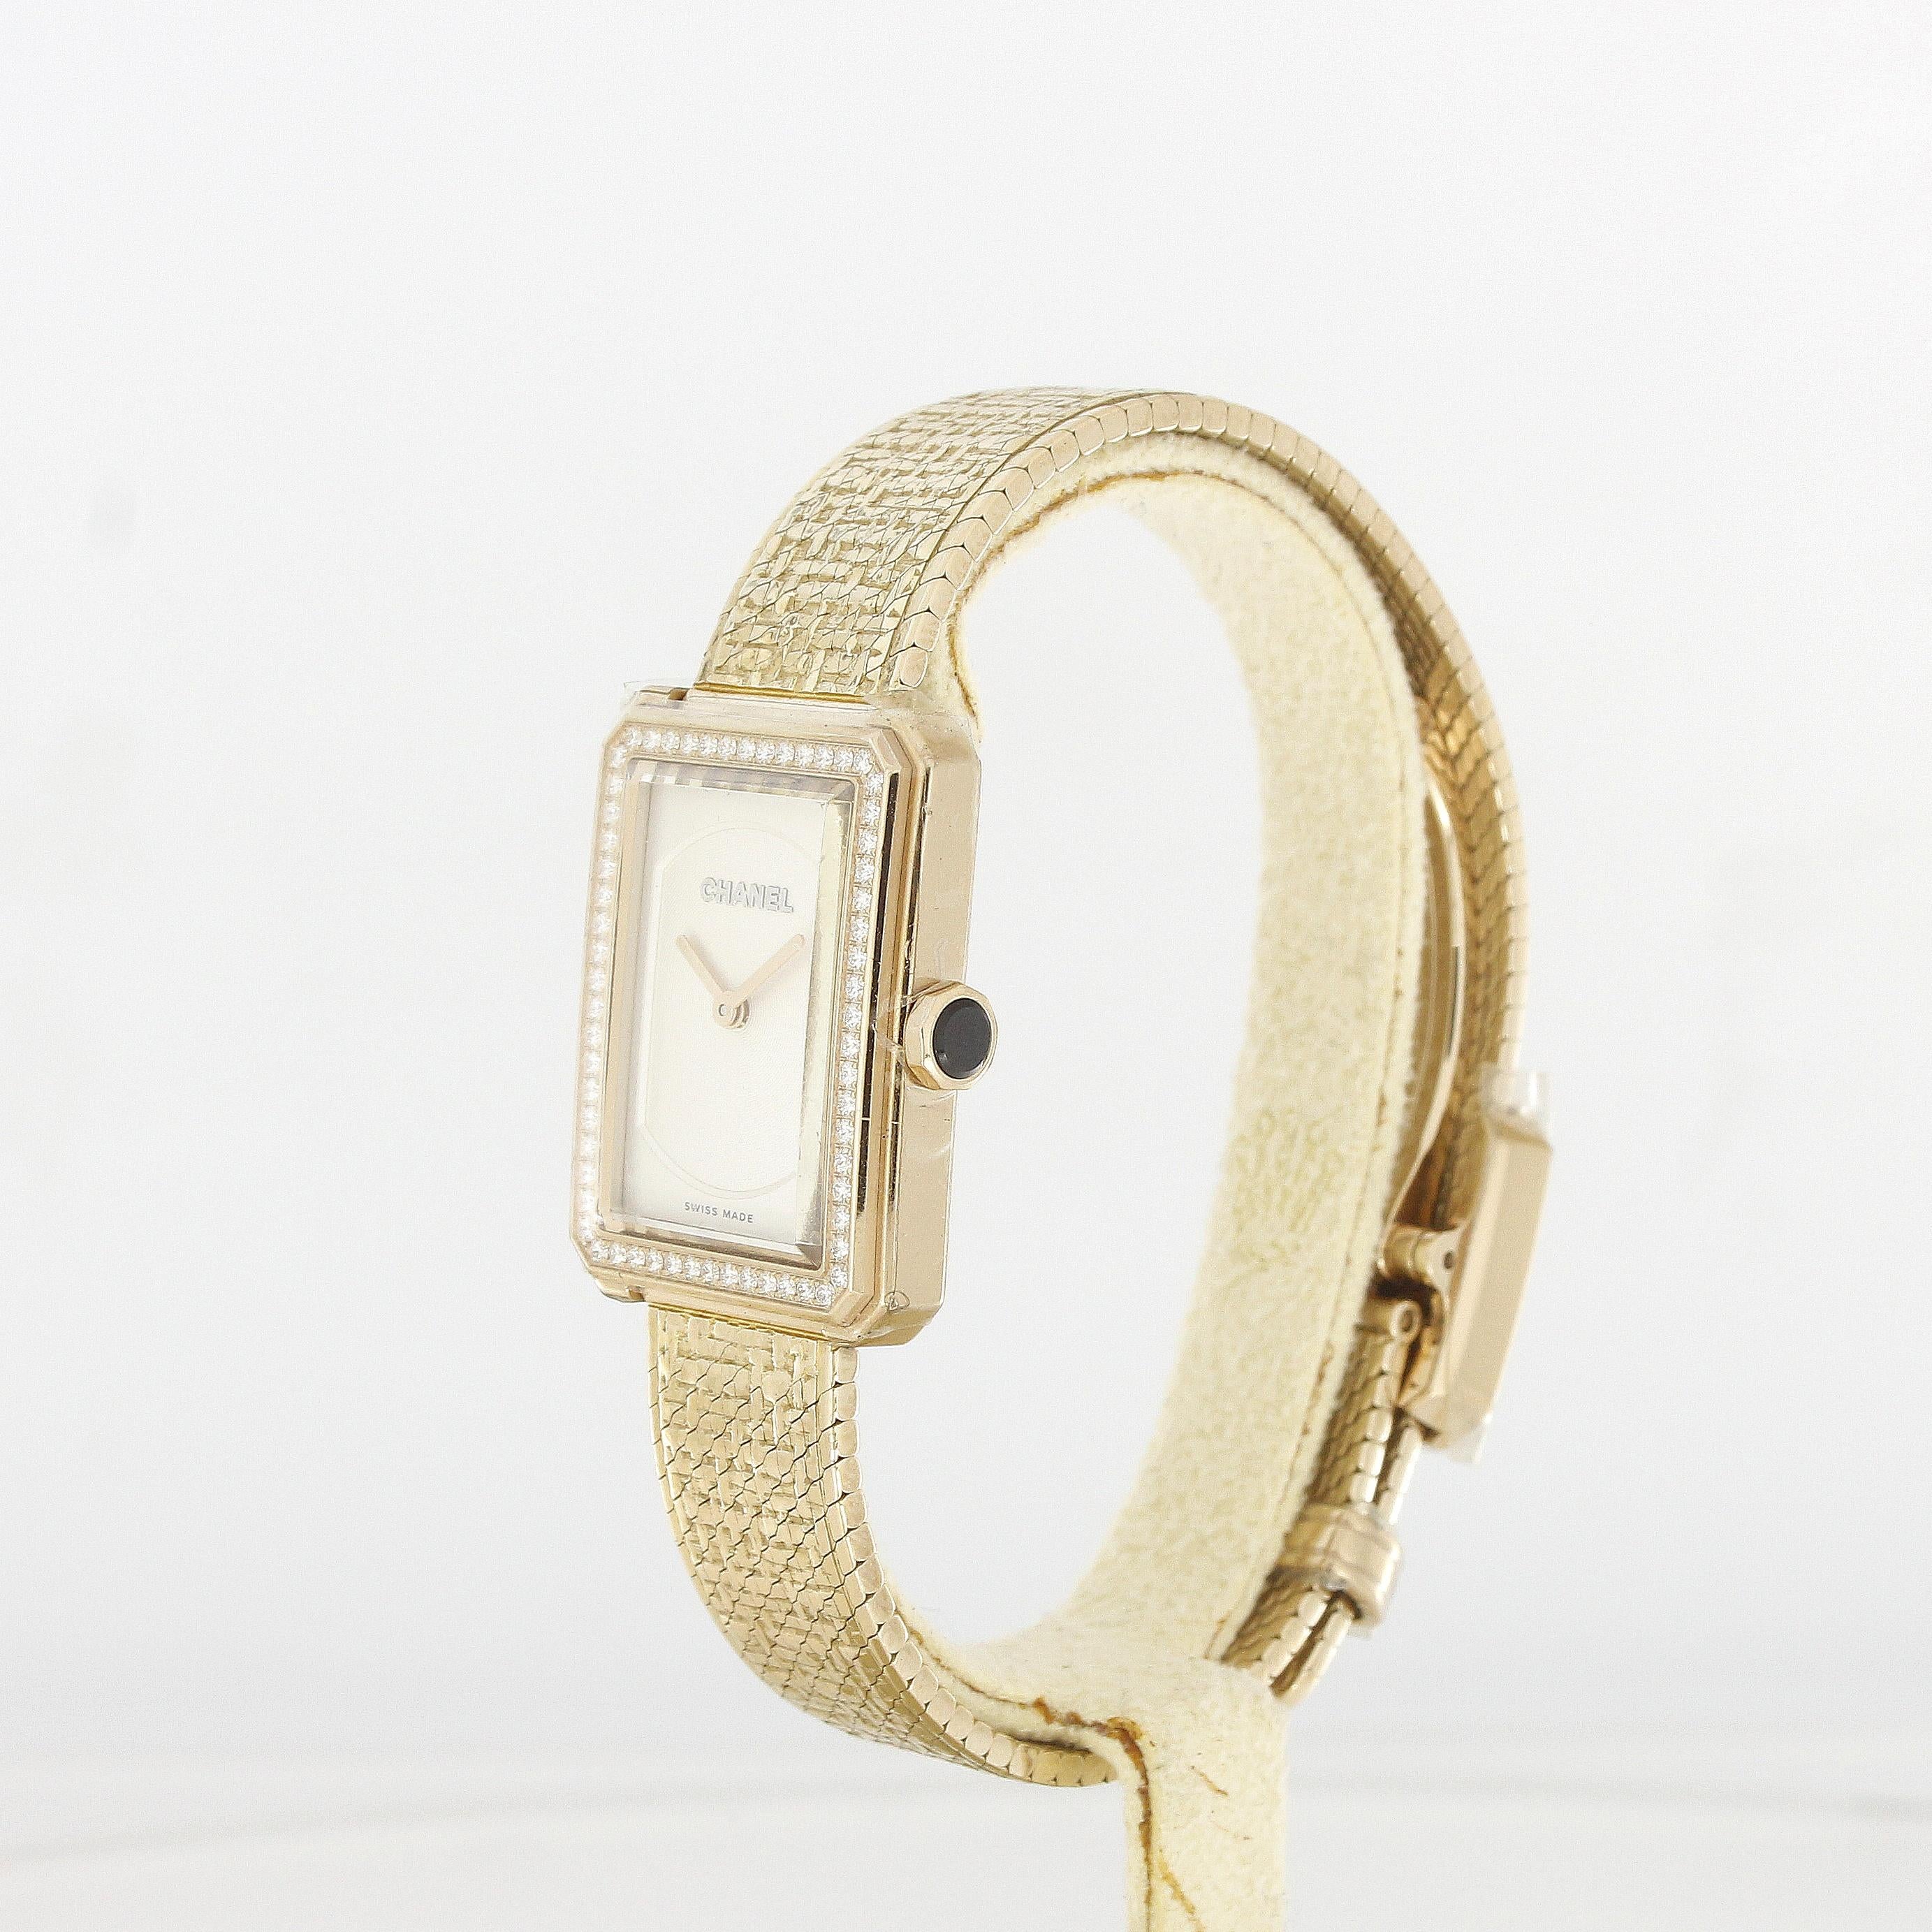 Chanel Boy-Friend Tweed Damen-Armbanduhr Rose Gold Diamanten

Referenz: H4881
Material: 18k Rose Gold
Uhrwerk: Quarz
Abmessungen: 27,9 x 21,5 x 6,2mm
Zifferblatt: Weiß
Armband: 18k Rose Gold
Zubehör: Box & Original-Zertifikat von 2022